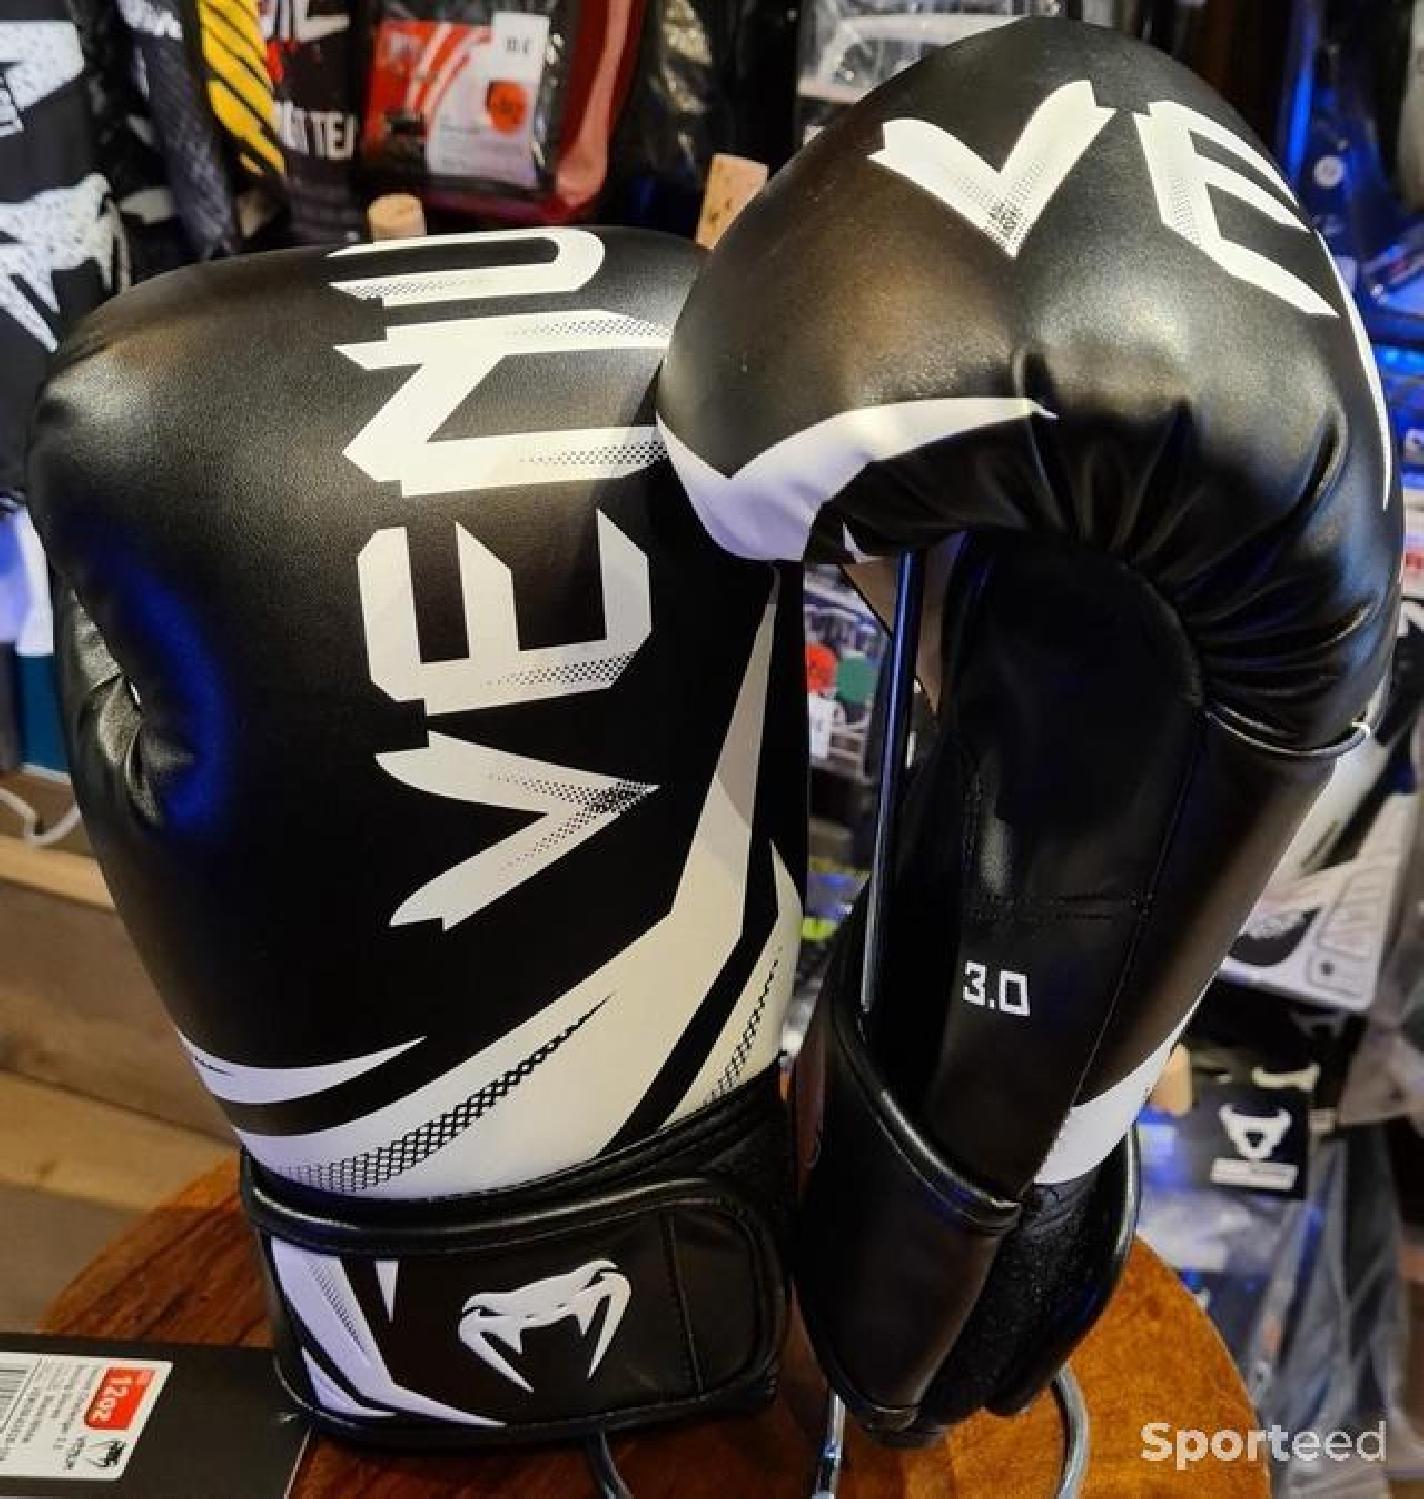 Gants de boxe Venum Modèle: Challenger 3.0 Boxing Gloves